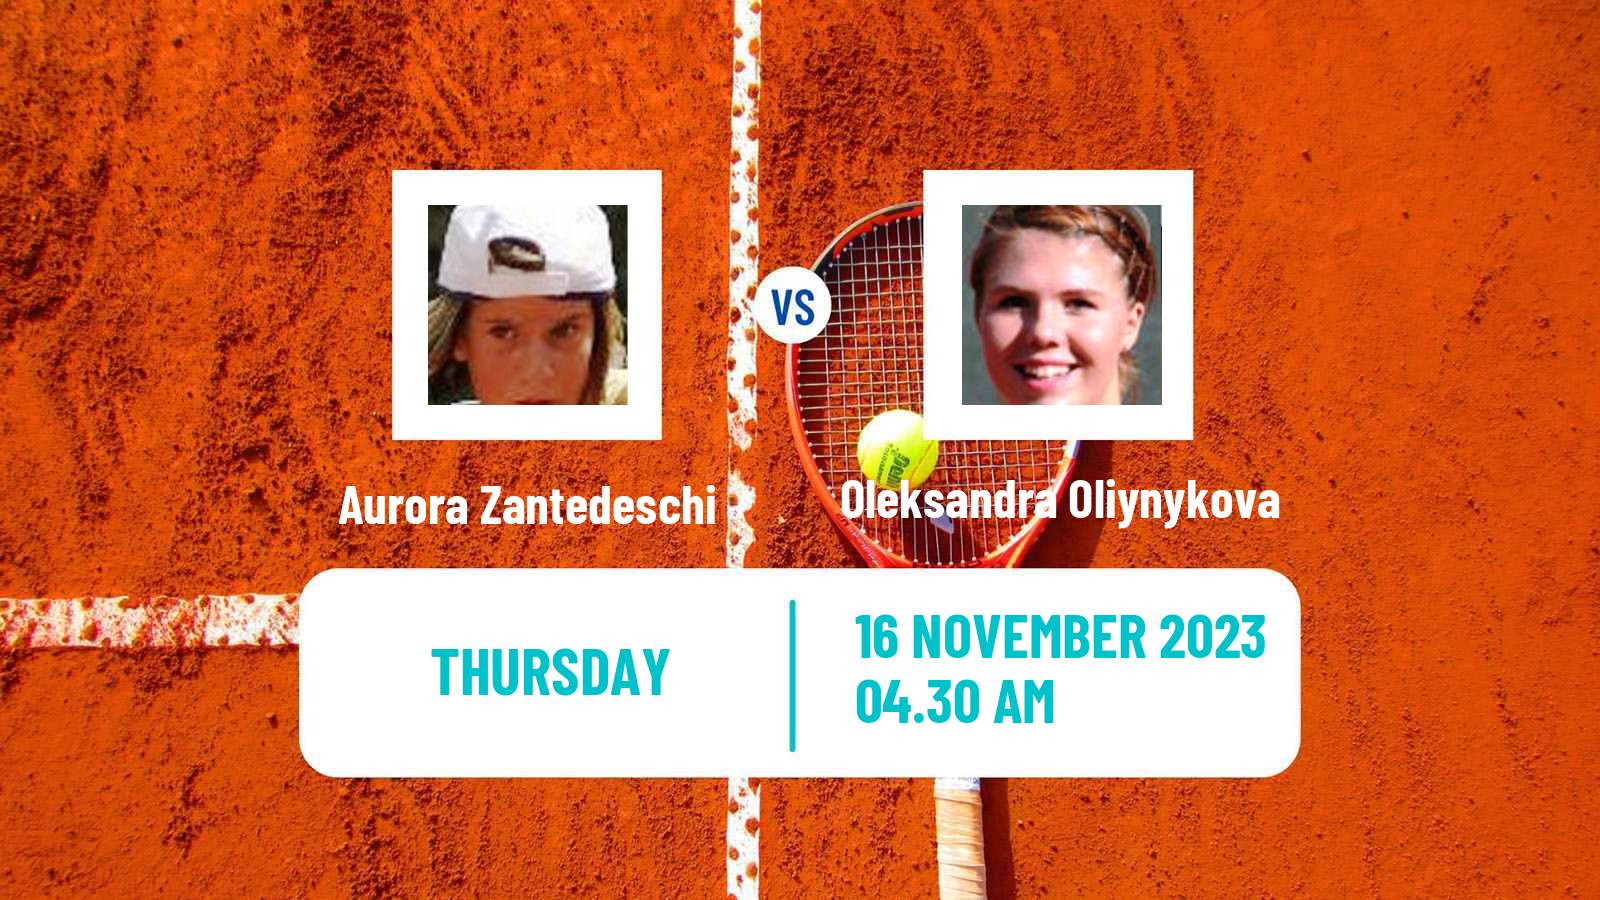 Tennis ITF W25 Heraklion 2 Women Aurora Zantedeschi - Oleksandra Oliynykova